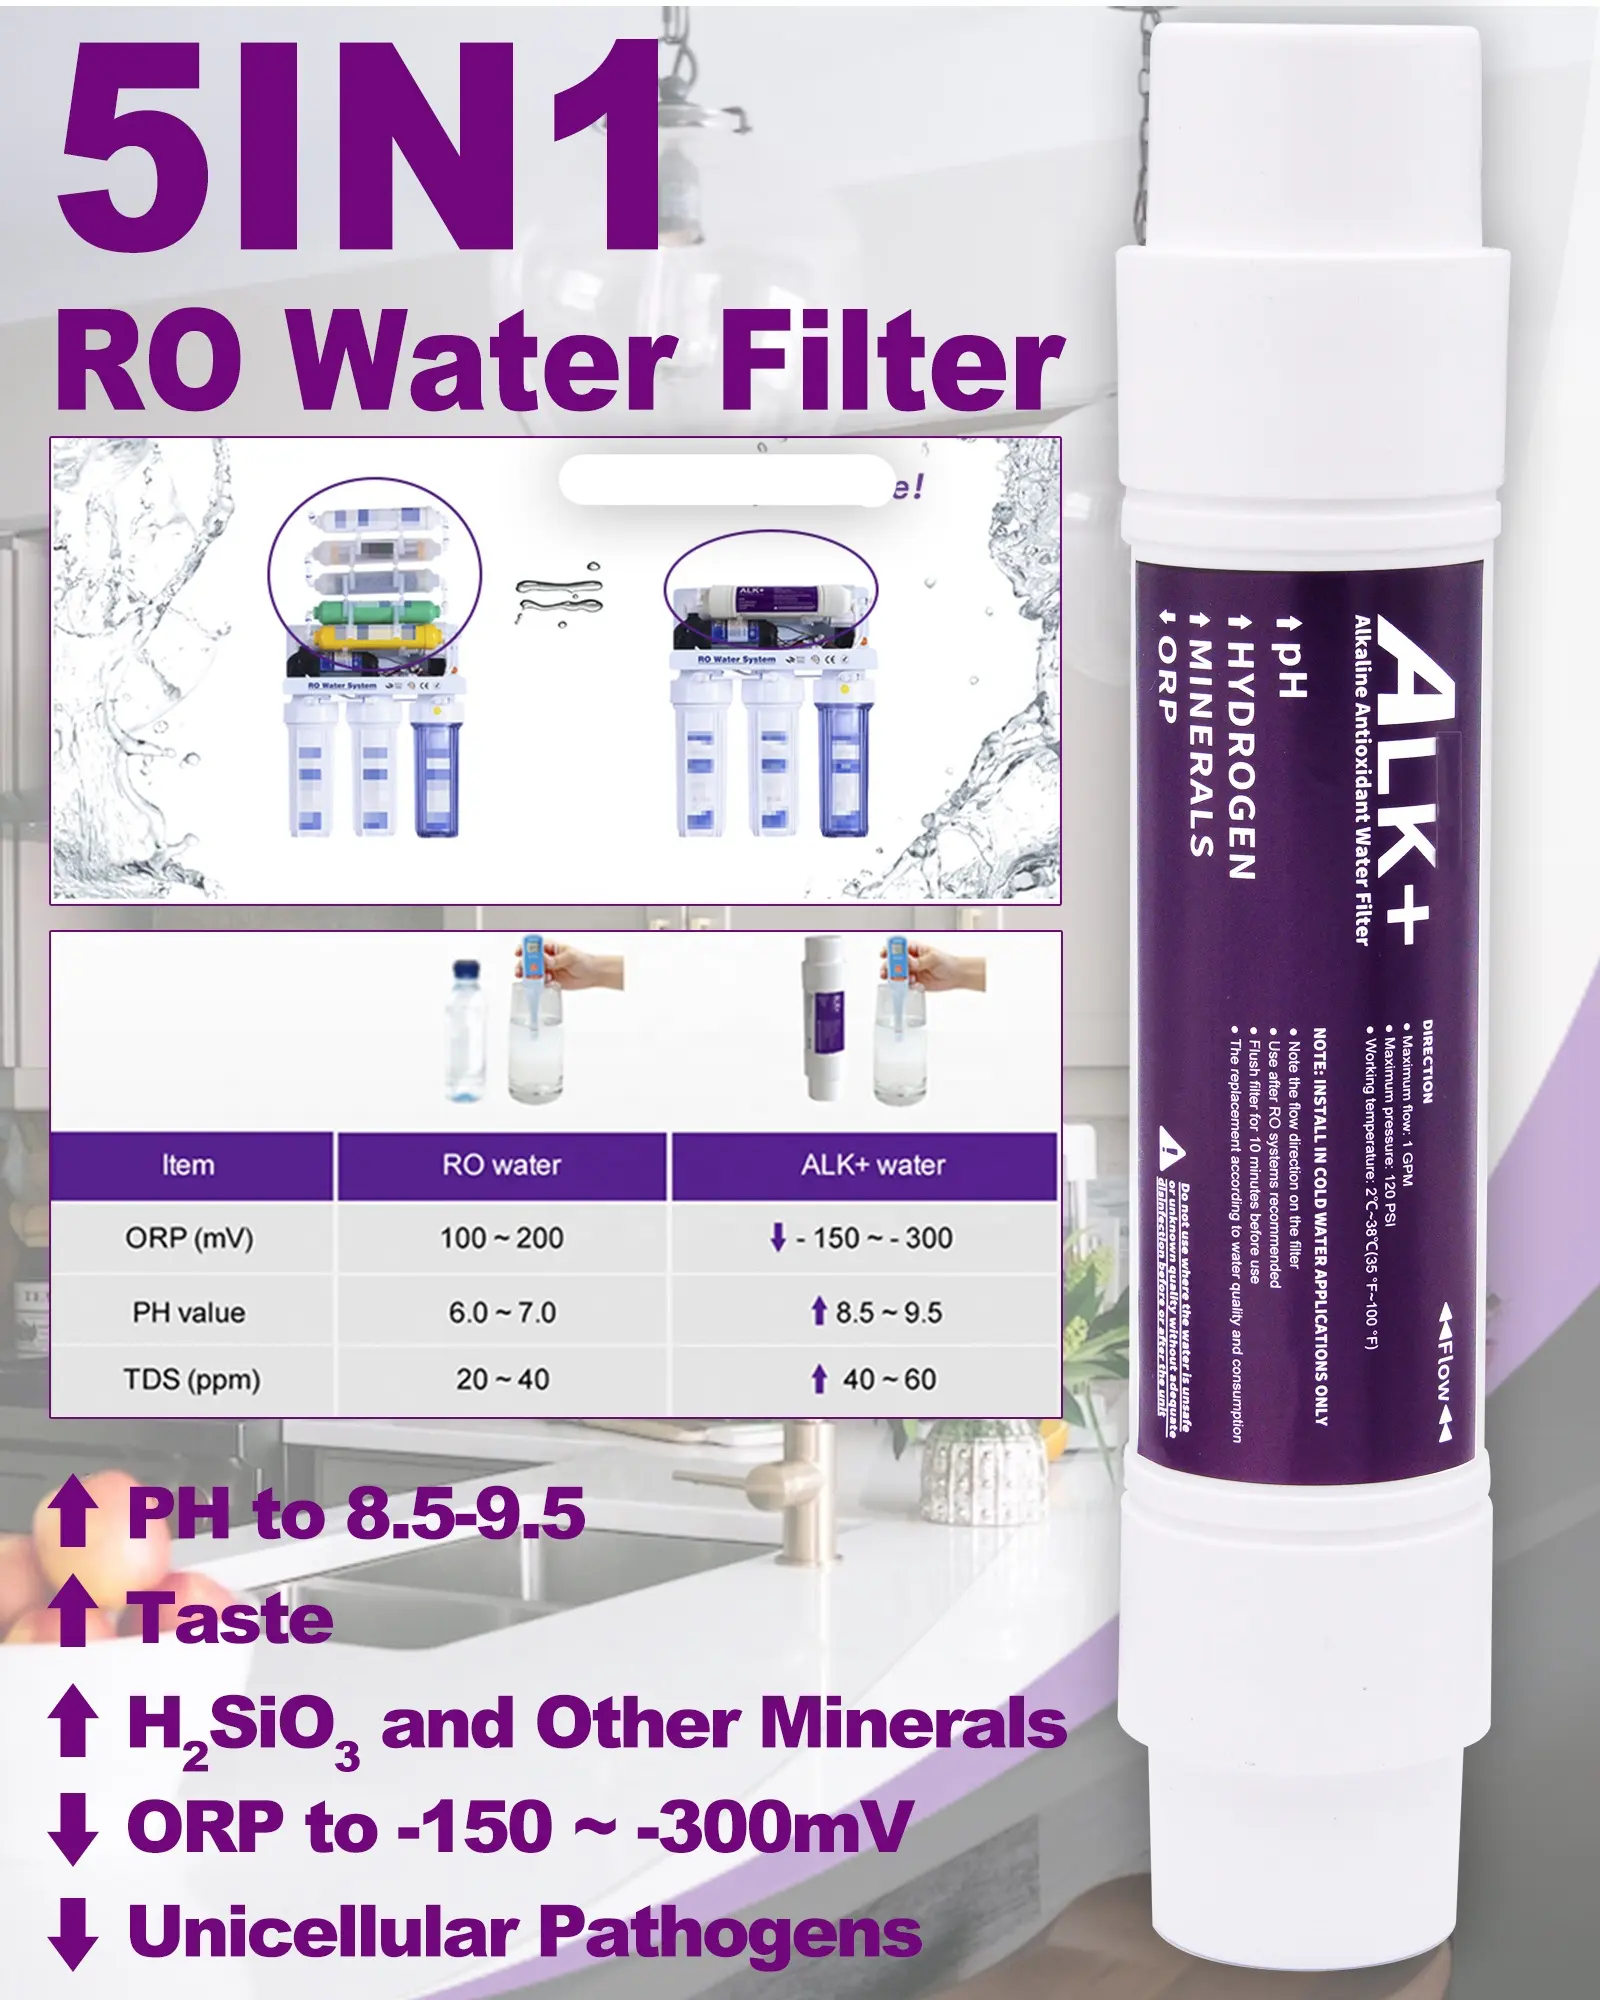 Lanlang alkali hidrojen kore ph 9.5 ters osmosis su filtresi kartuş için alkali su filtresi iyonlaştırıcı